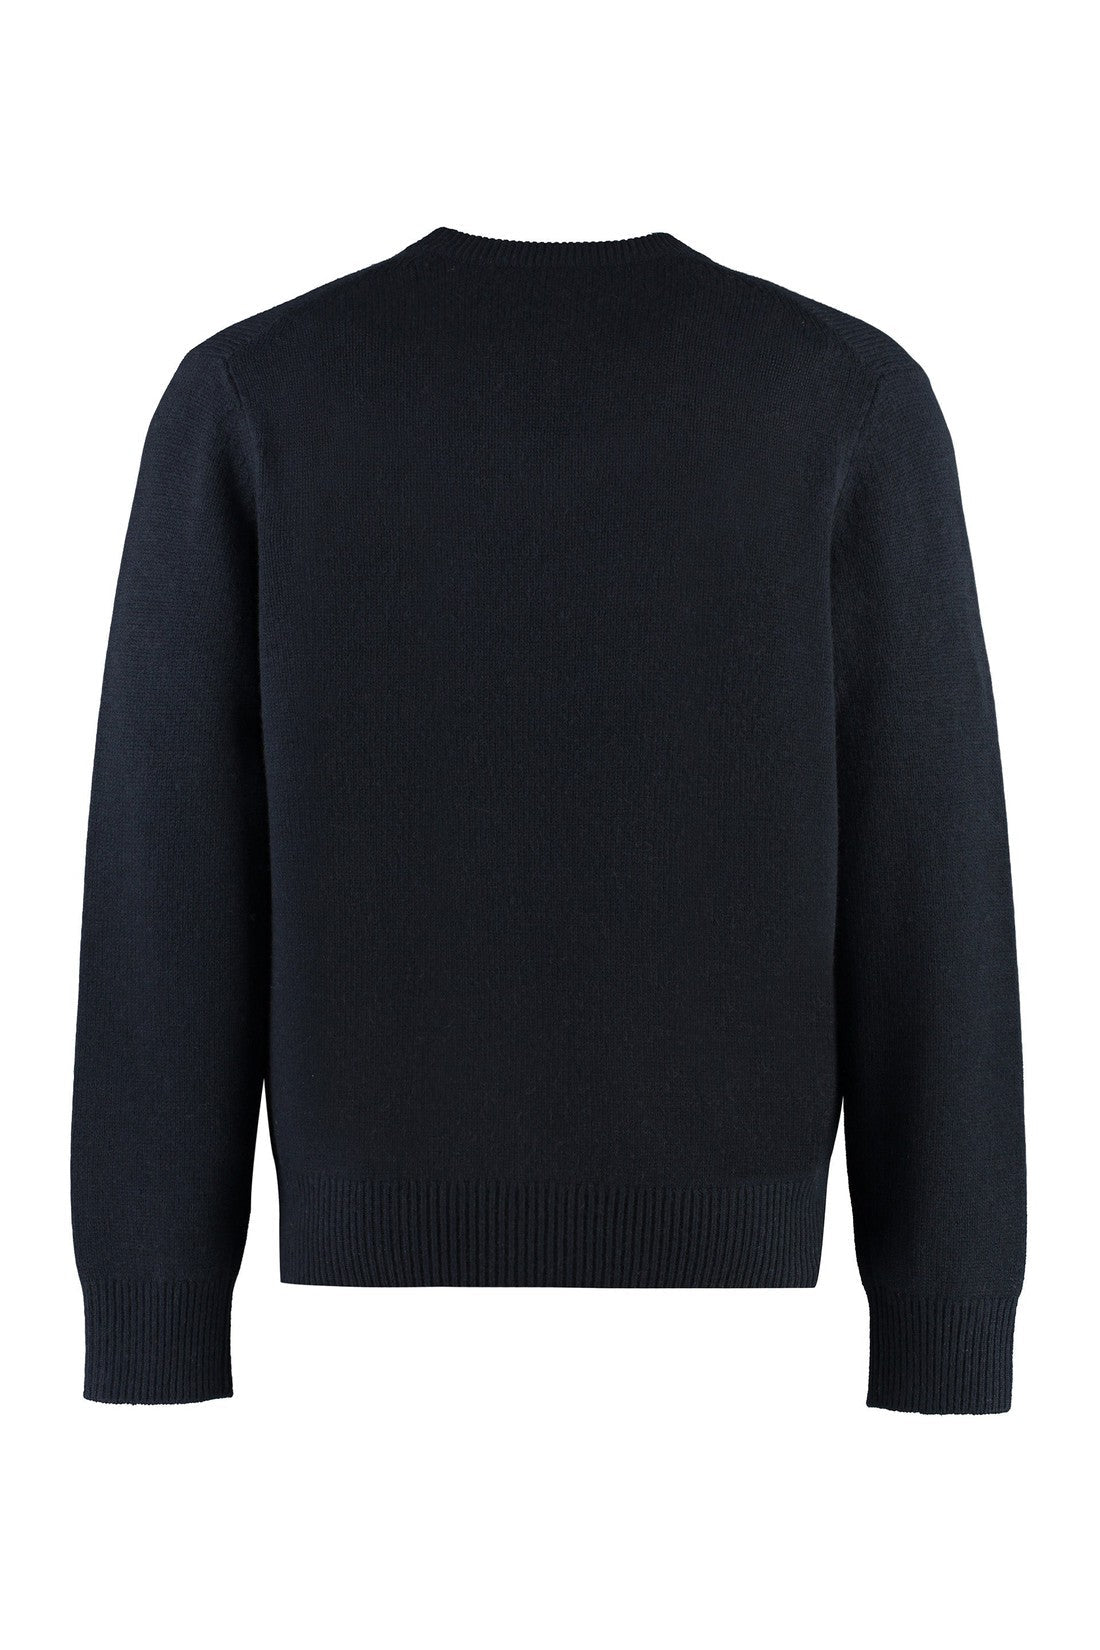 Vince-OUTLET-SALE-Cashmere sweater-ARCHIVIST